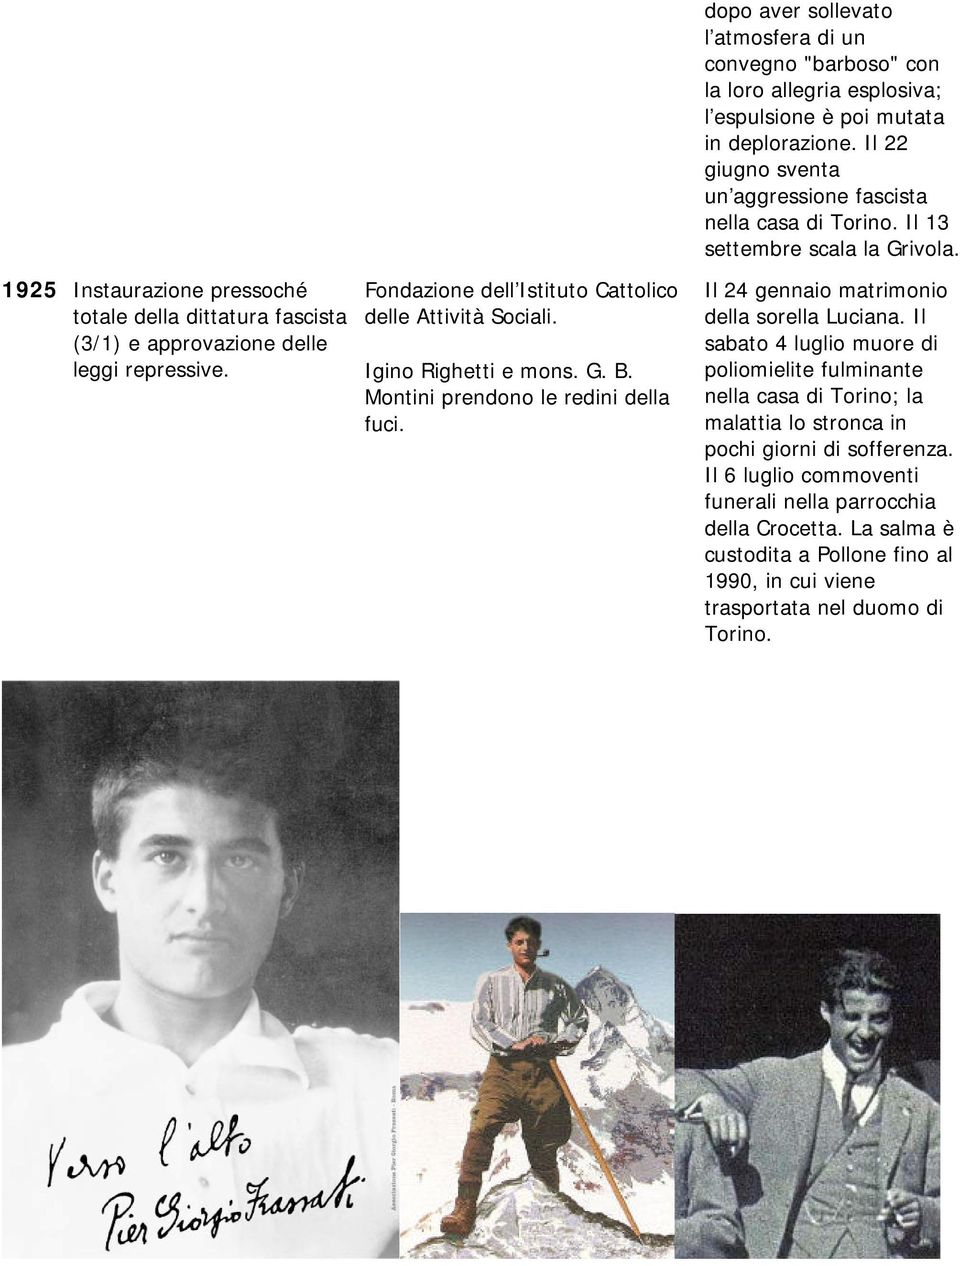 Il 22 giugno sventa un aggressione fascista nella casa di Torino. Il 13 settembre scala la Grivola. Il 24 gennaio matrimonio della sorella Luciana.